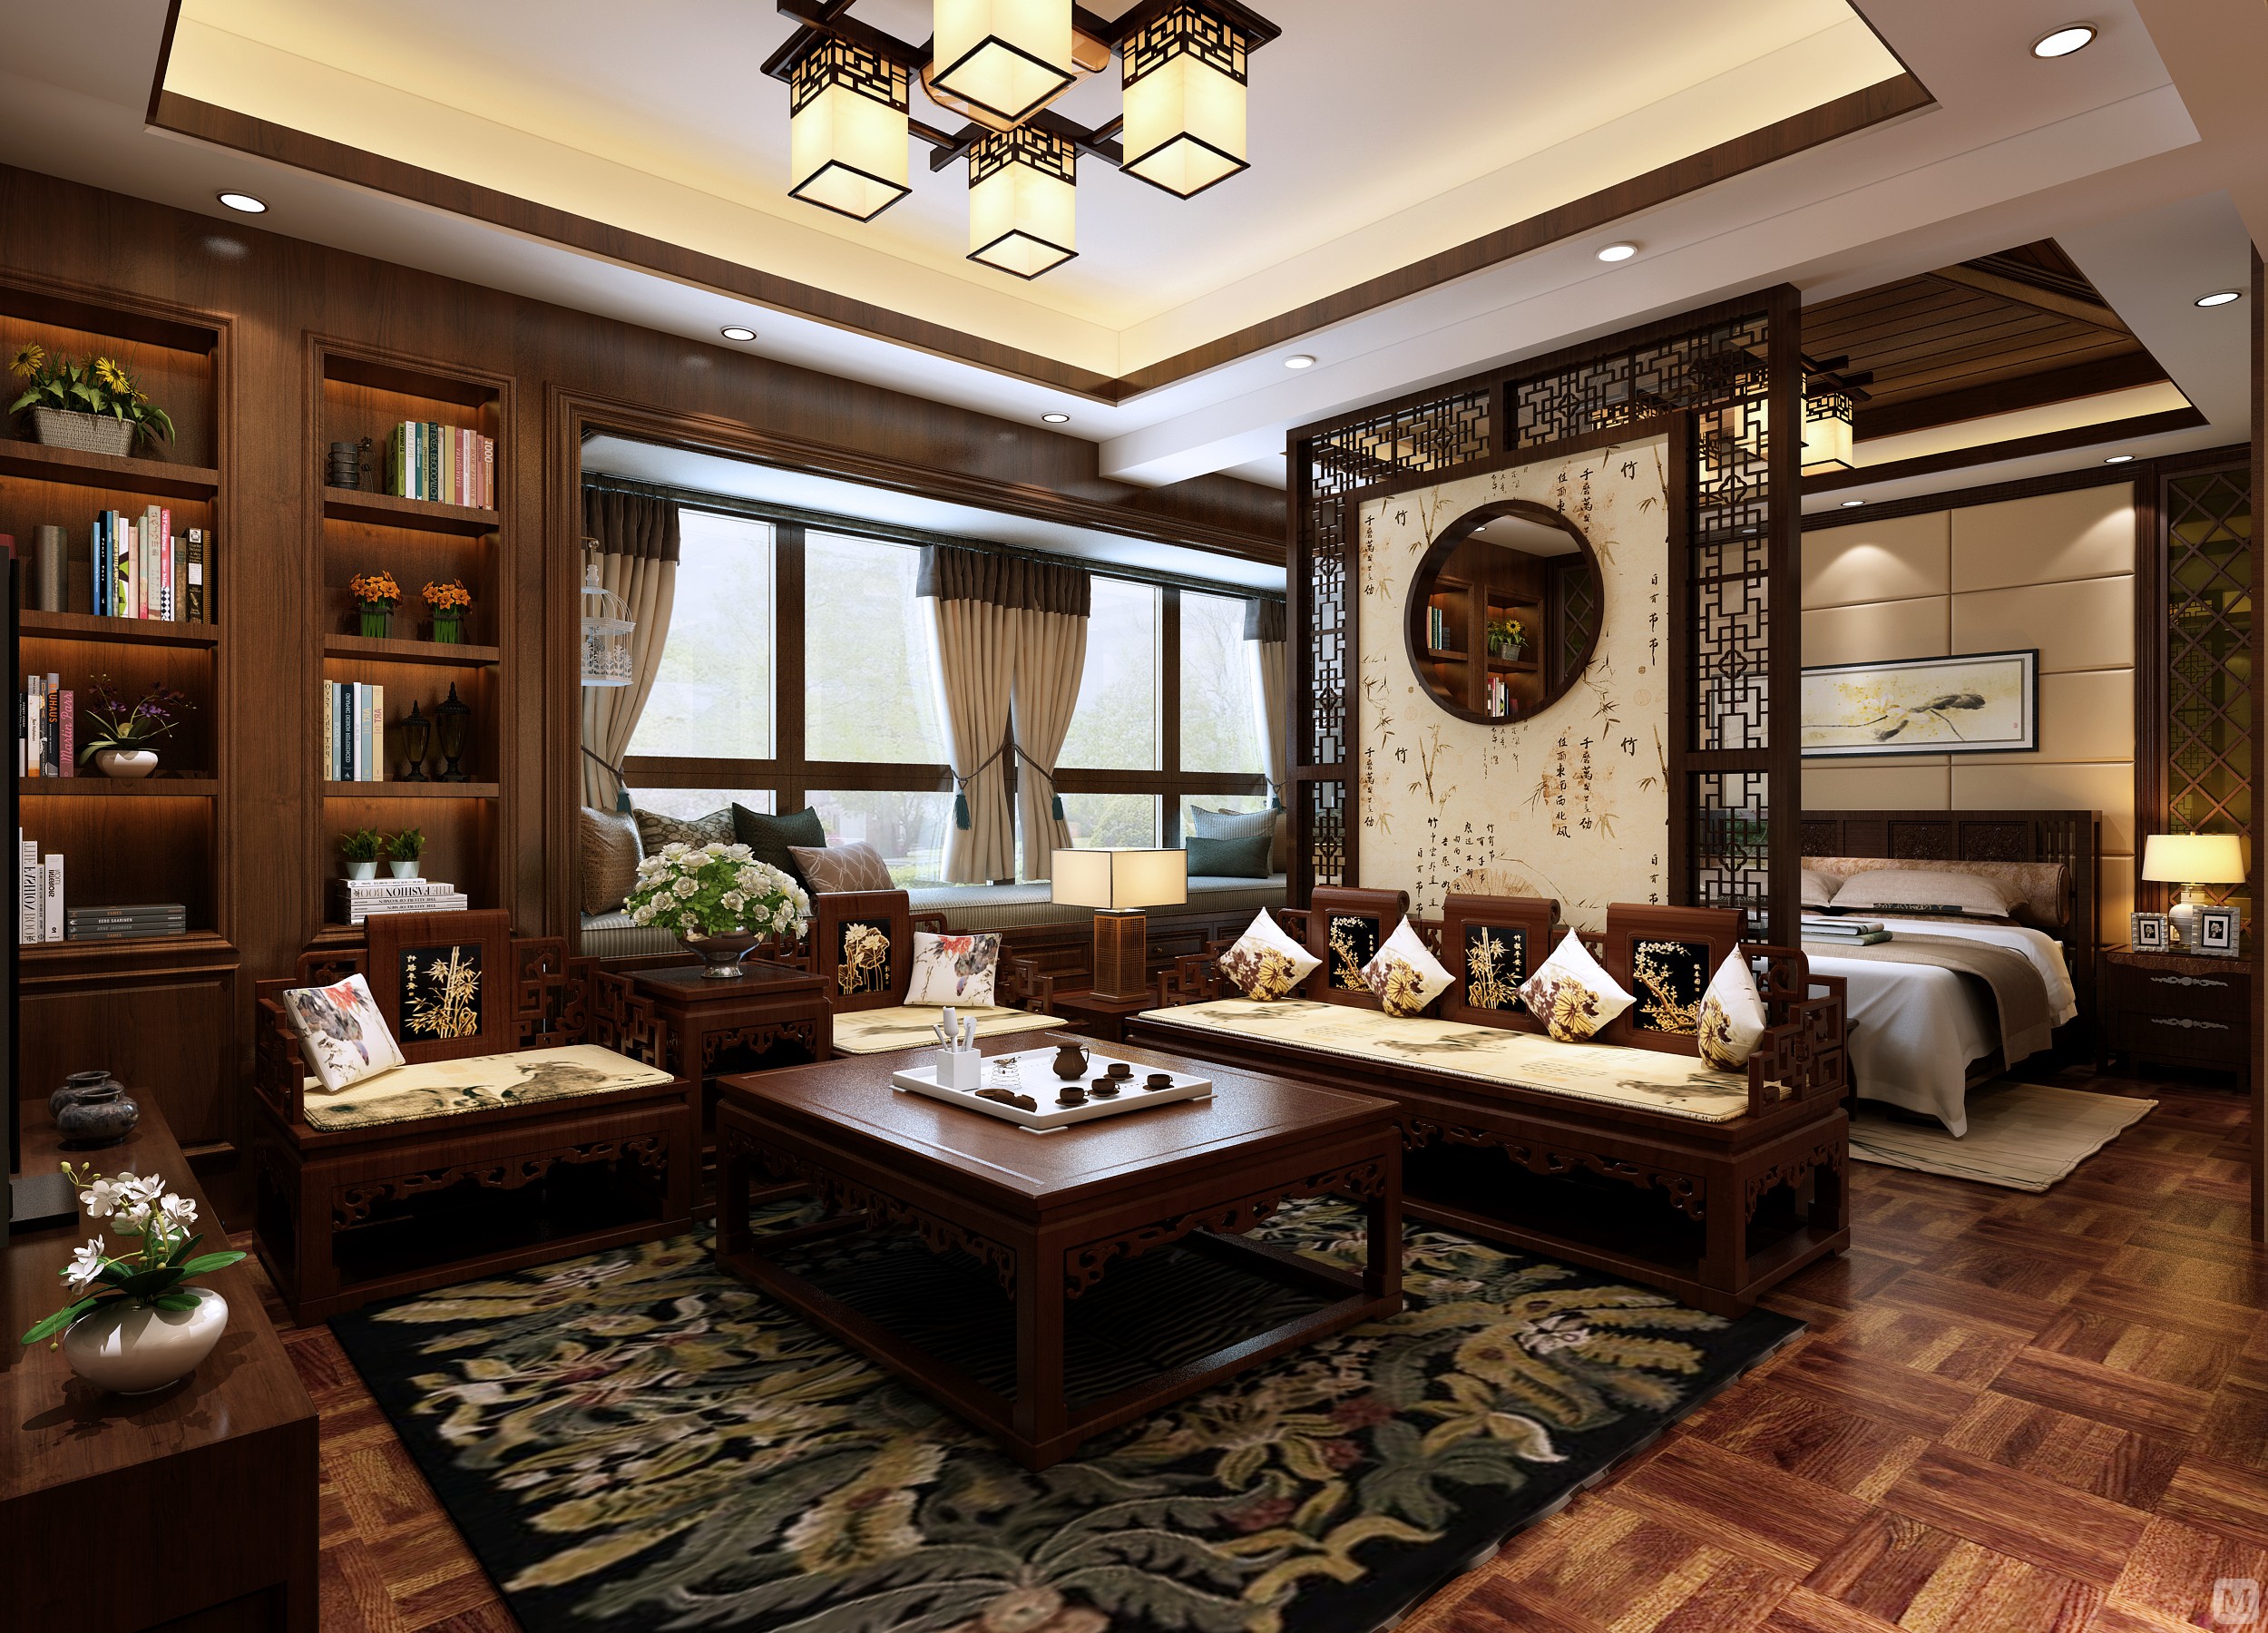 新中式风格是指将中国古典建筑元素提炼融合到人的生活和审美习惯的一